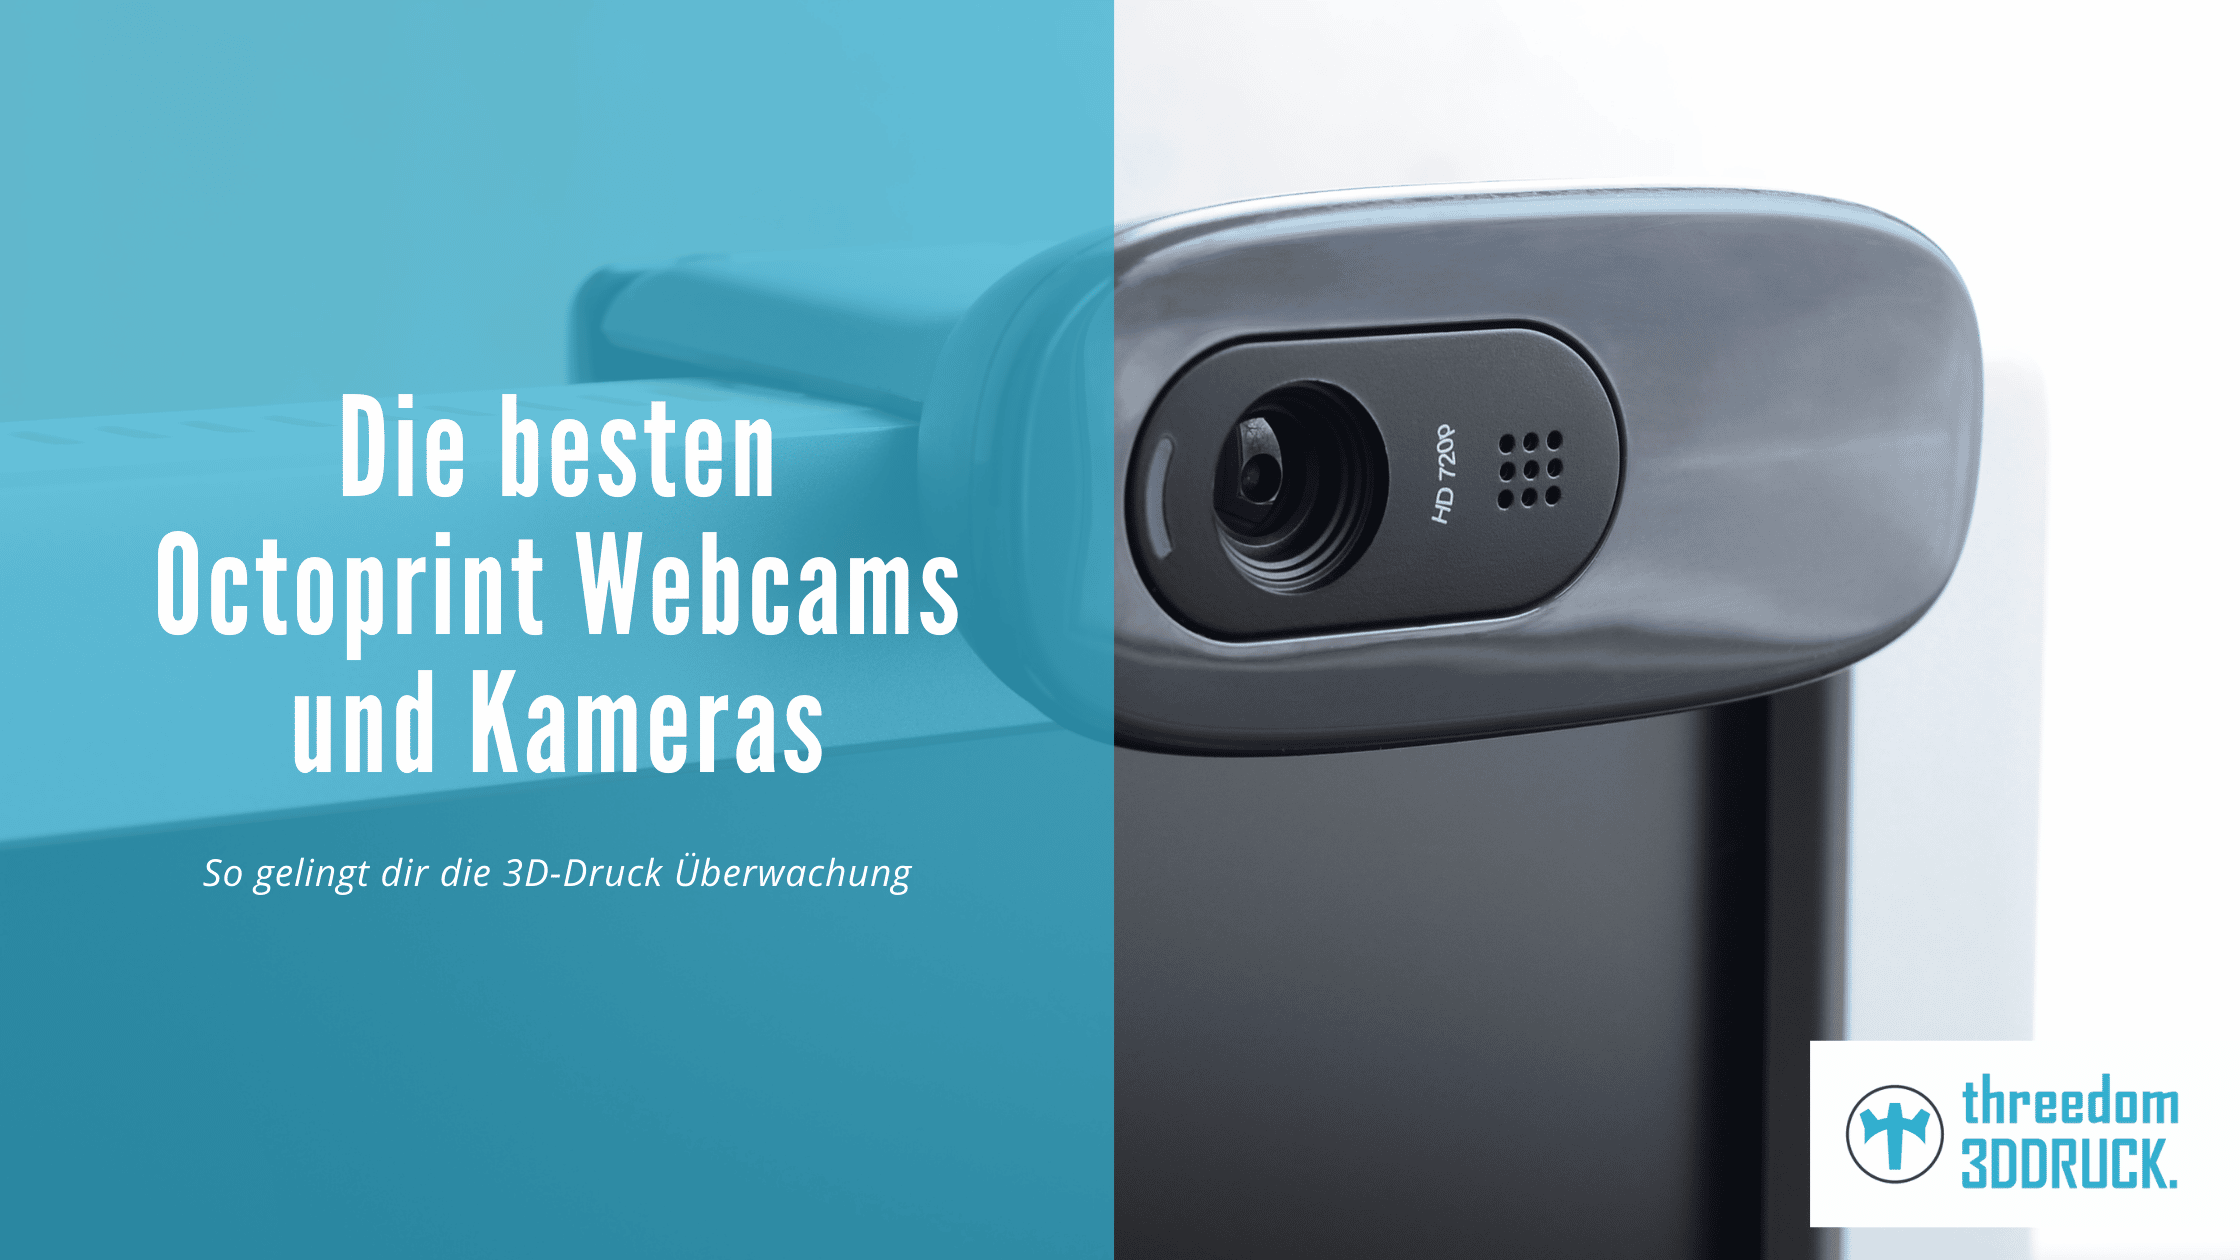 Die besten Octoprint Webcams und Kameras 2022